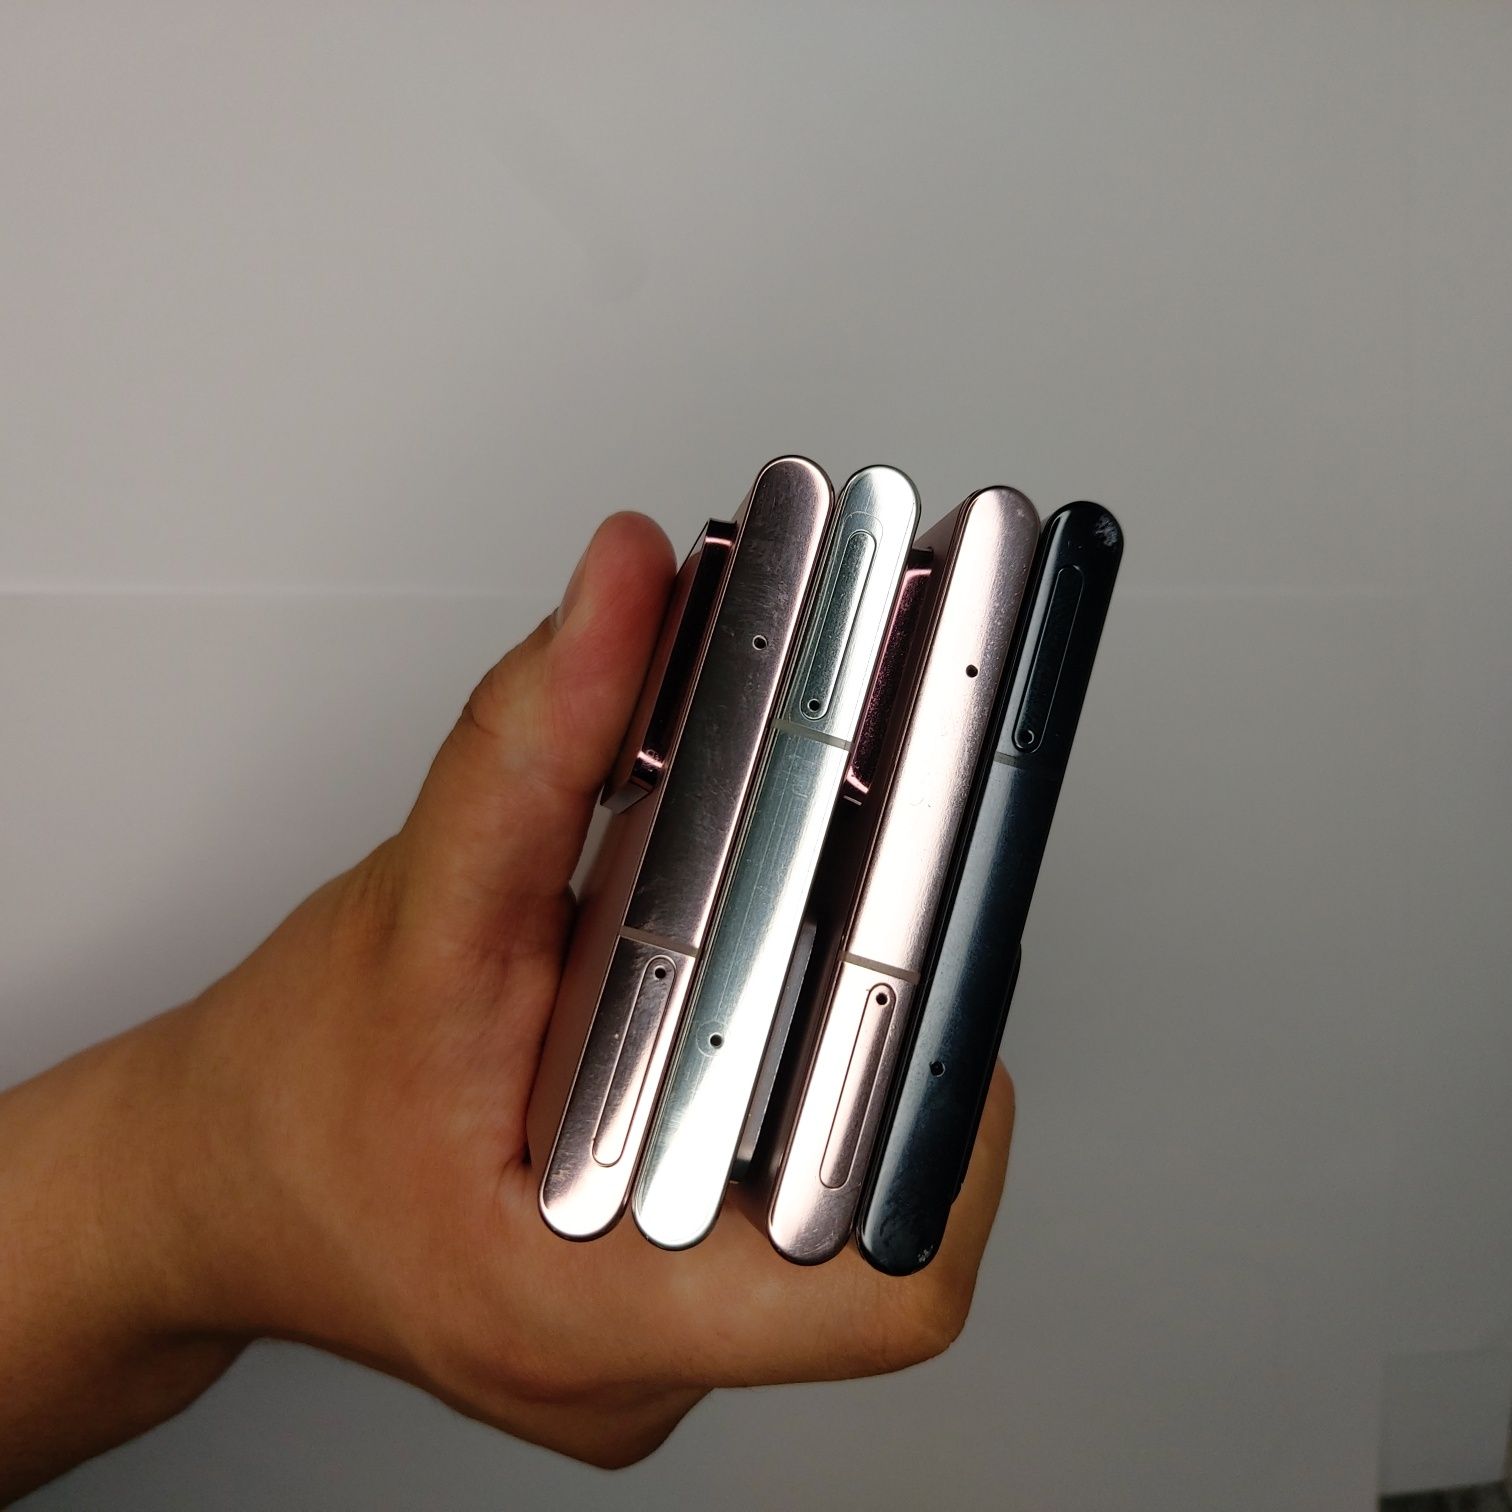 Samsung Galaxy Note 20 Ultra OzU 12/256 GB Snapdragon 865+